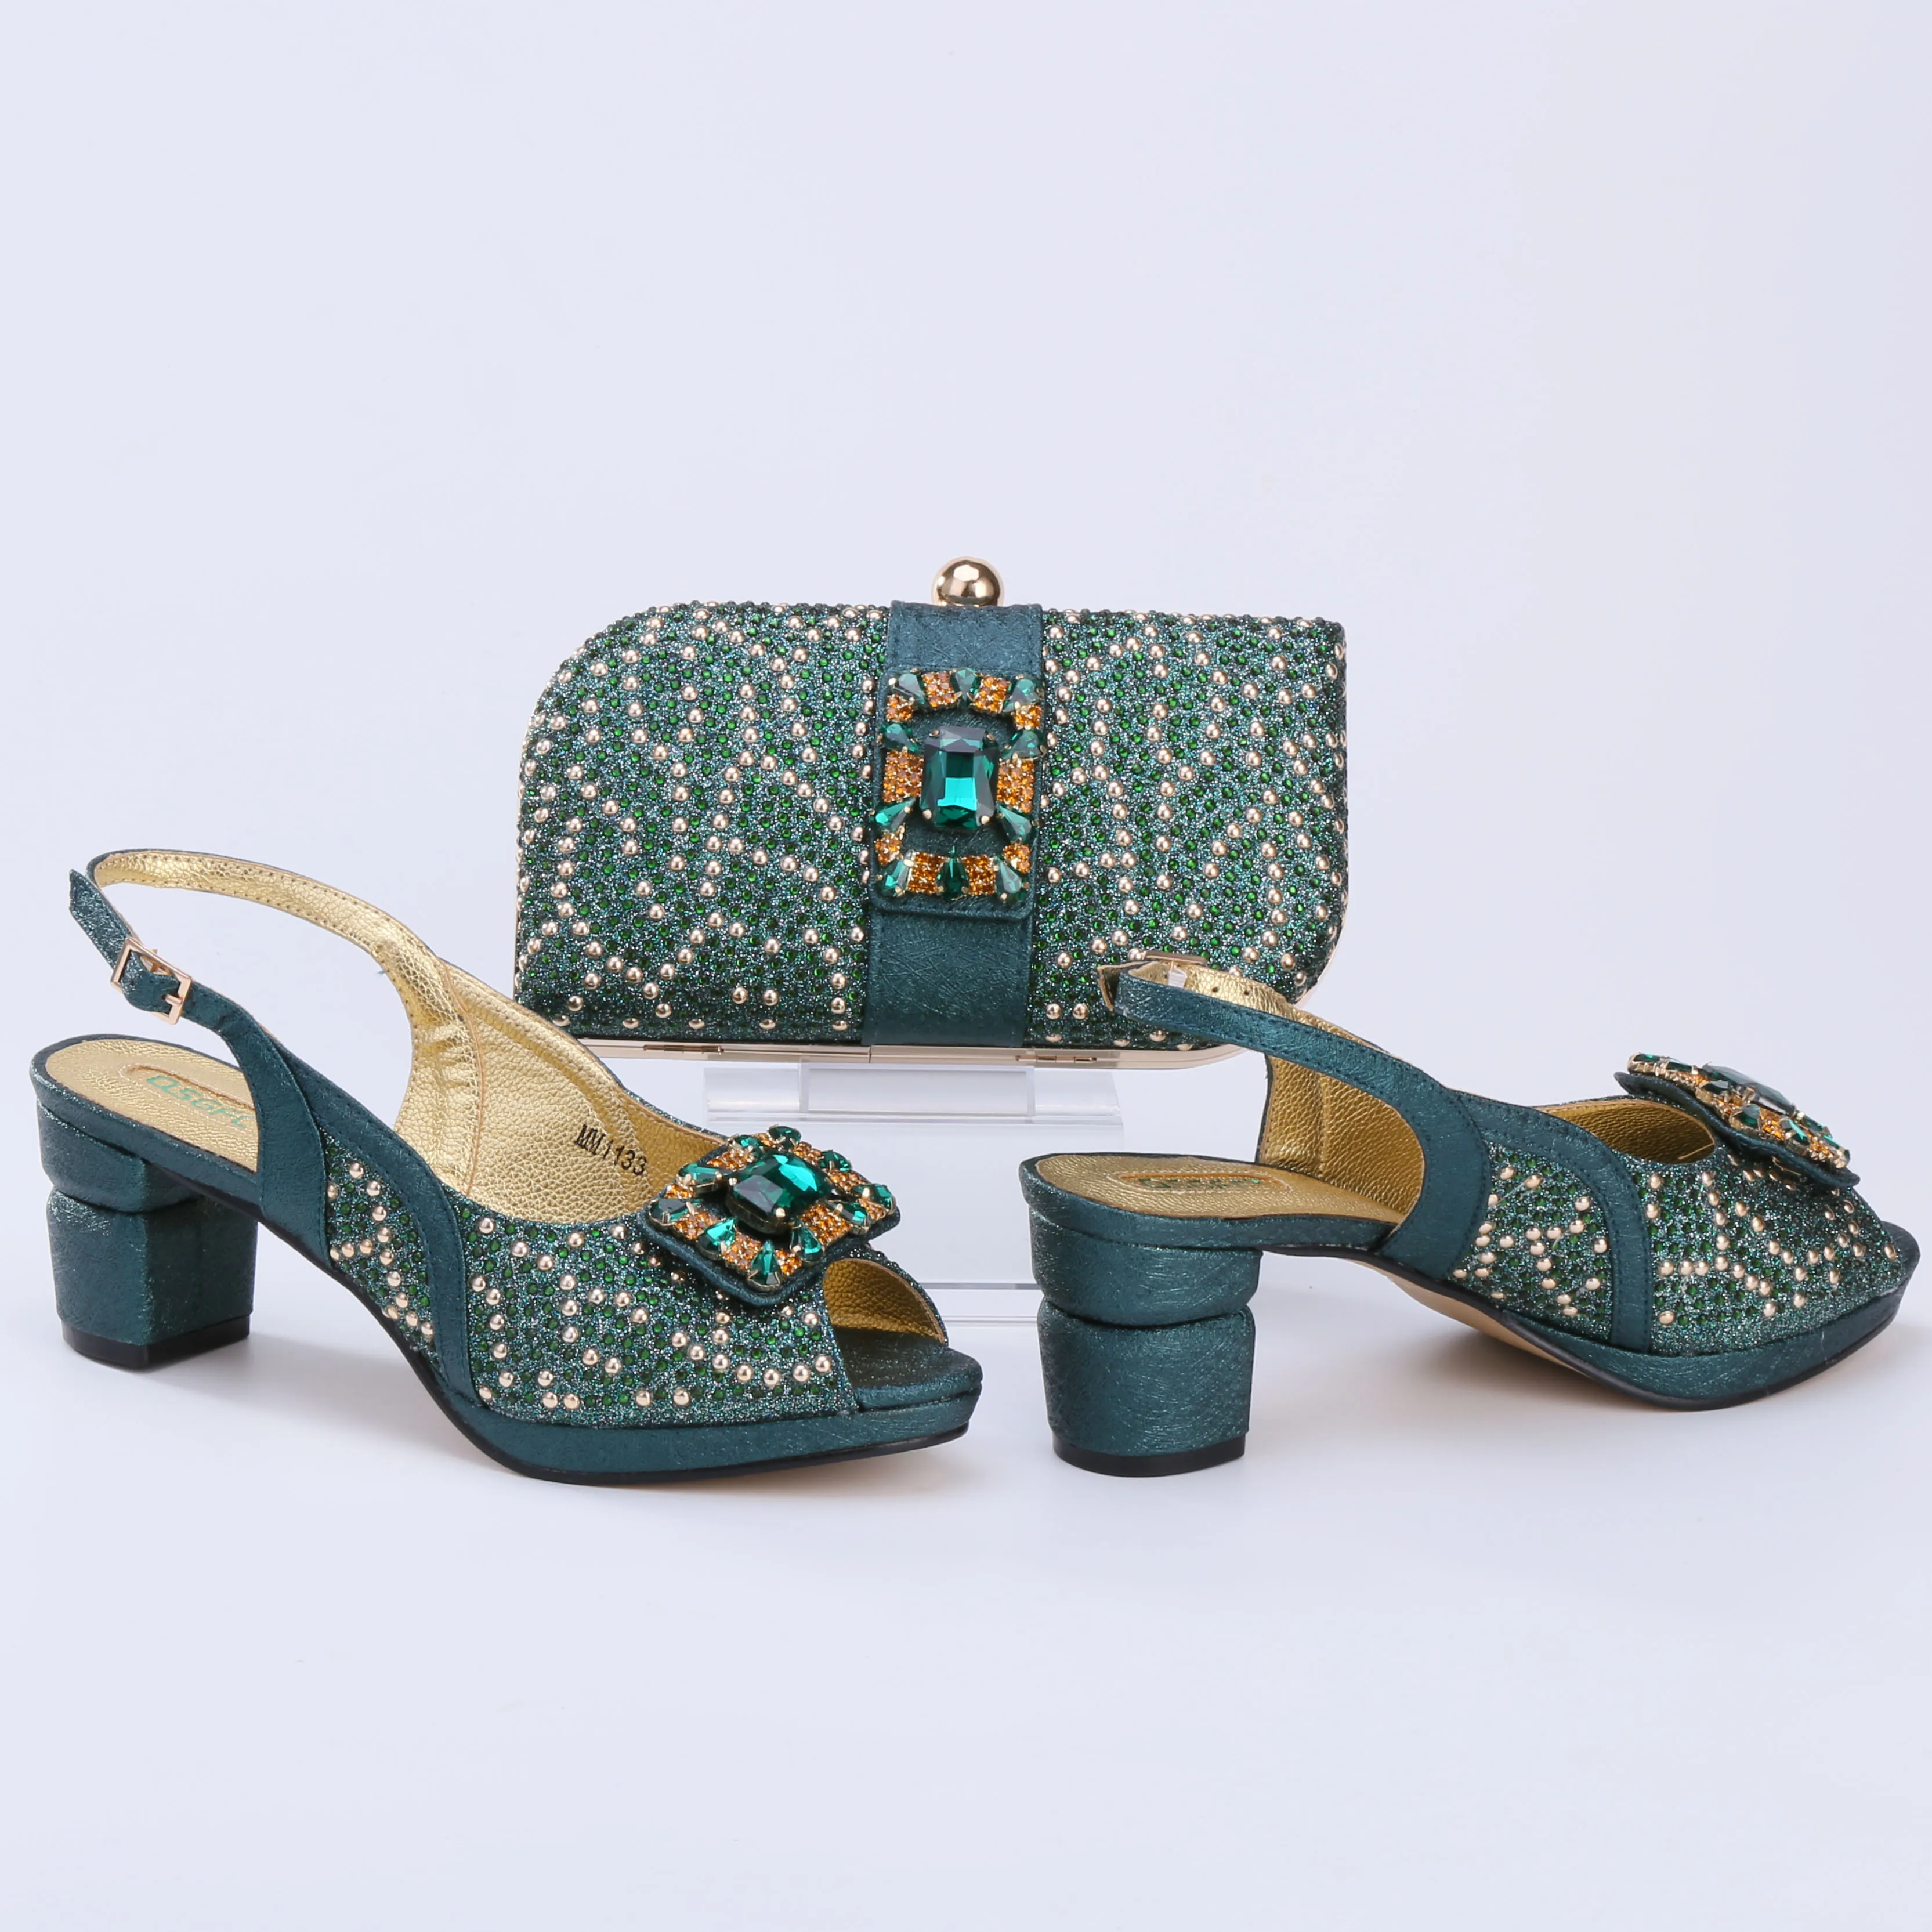 Doershow-zapatos italianos con bolsos a juego para mujer, conjunto de zapatos y bolsos africanos para fiesta de graduación, Sandalia de verano, hermoso estilo HTR1-28